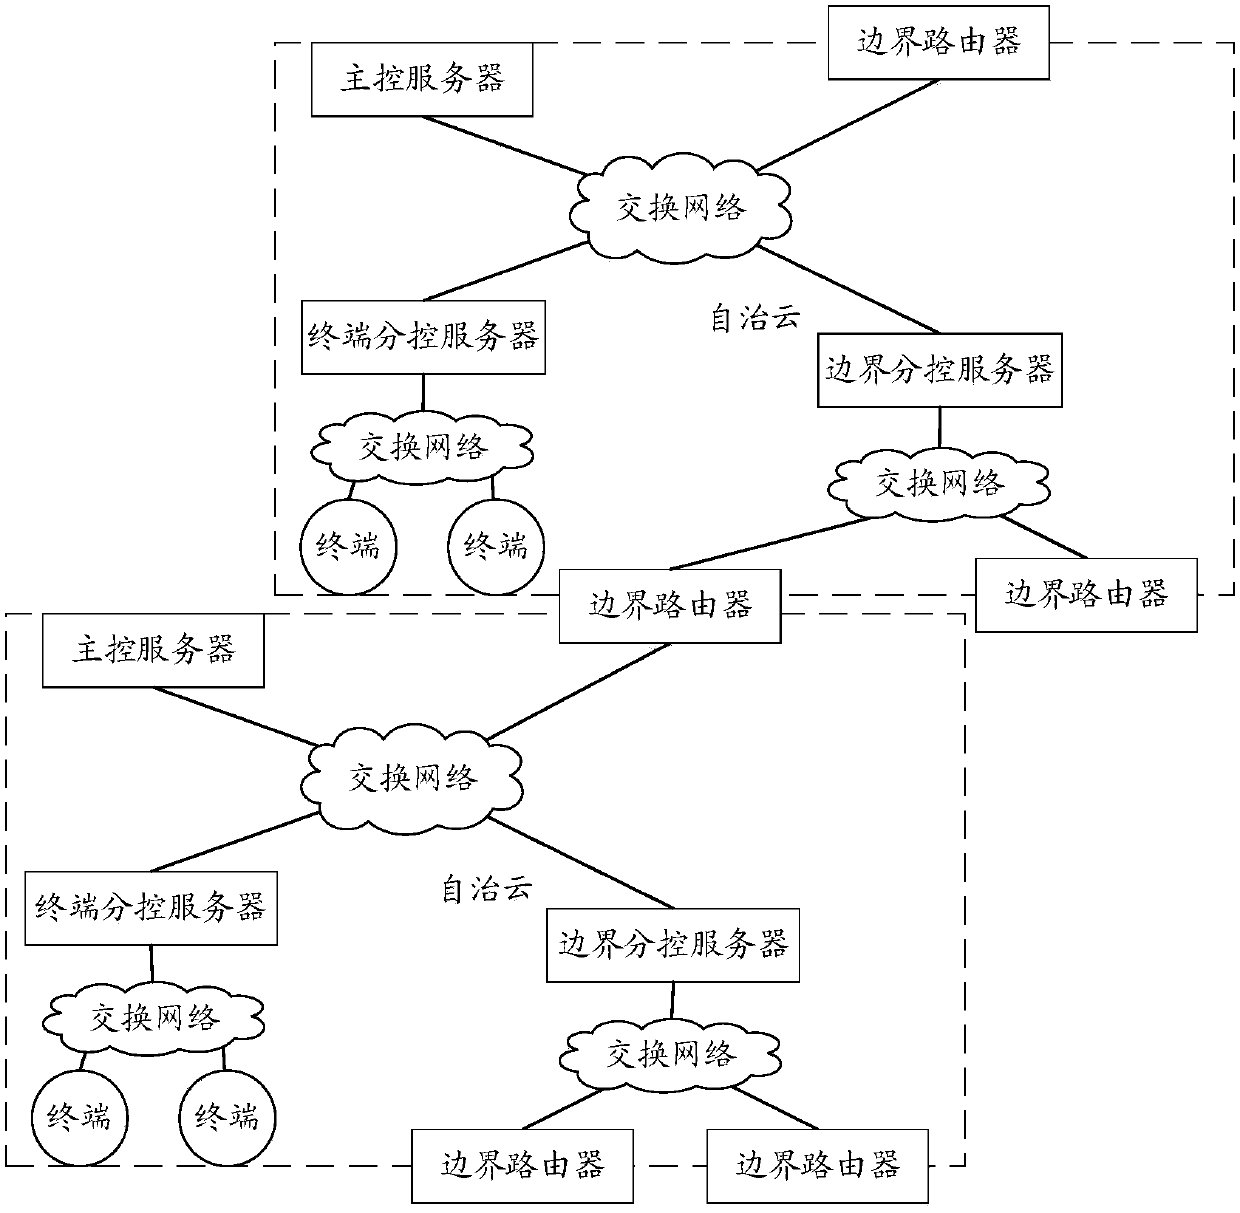 Network access method and system for autonomous cloud in autonomous network